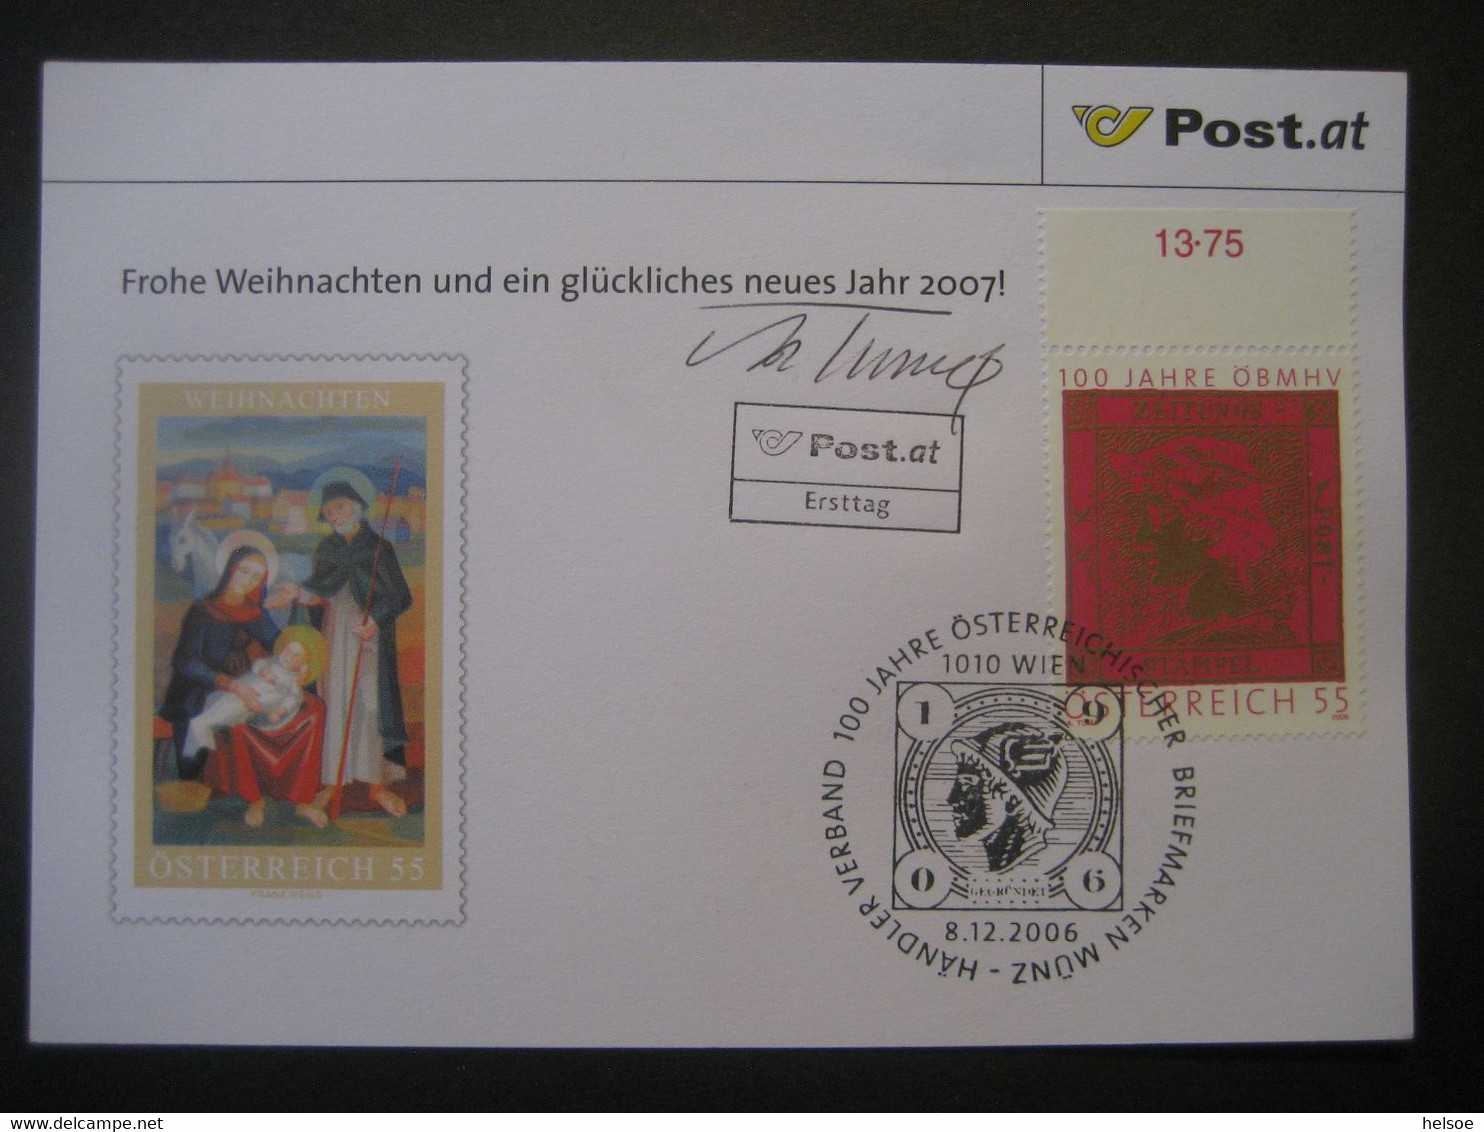 Osterreich- Advent 100 Jahre ÖBMSV, FDC Mit Autogramm Von Adolf Tuma - Brieven En Documenten